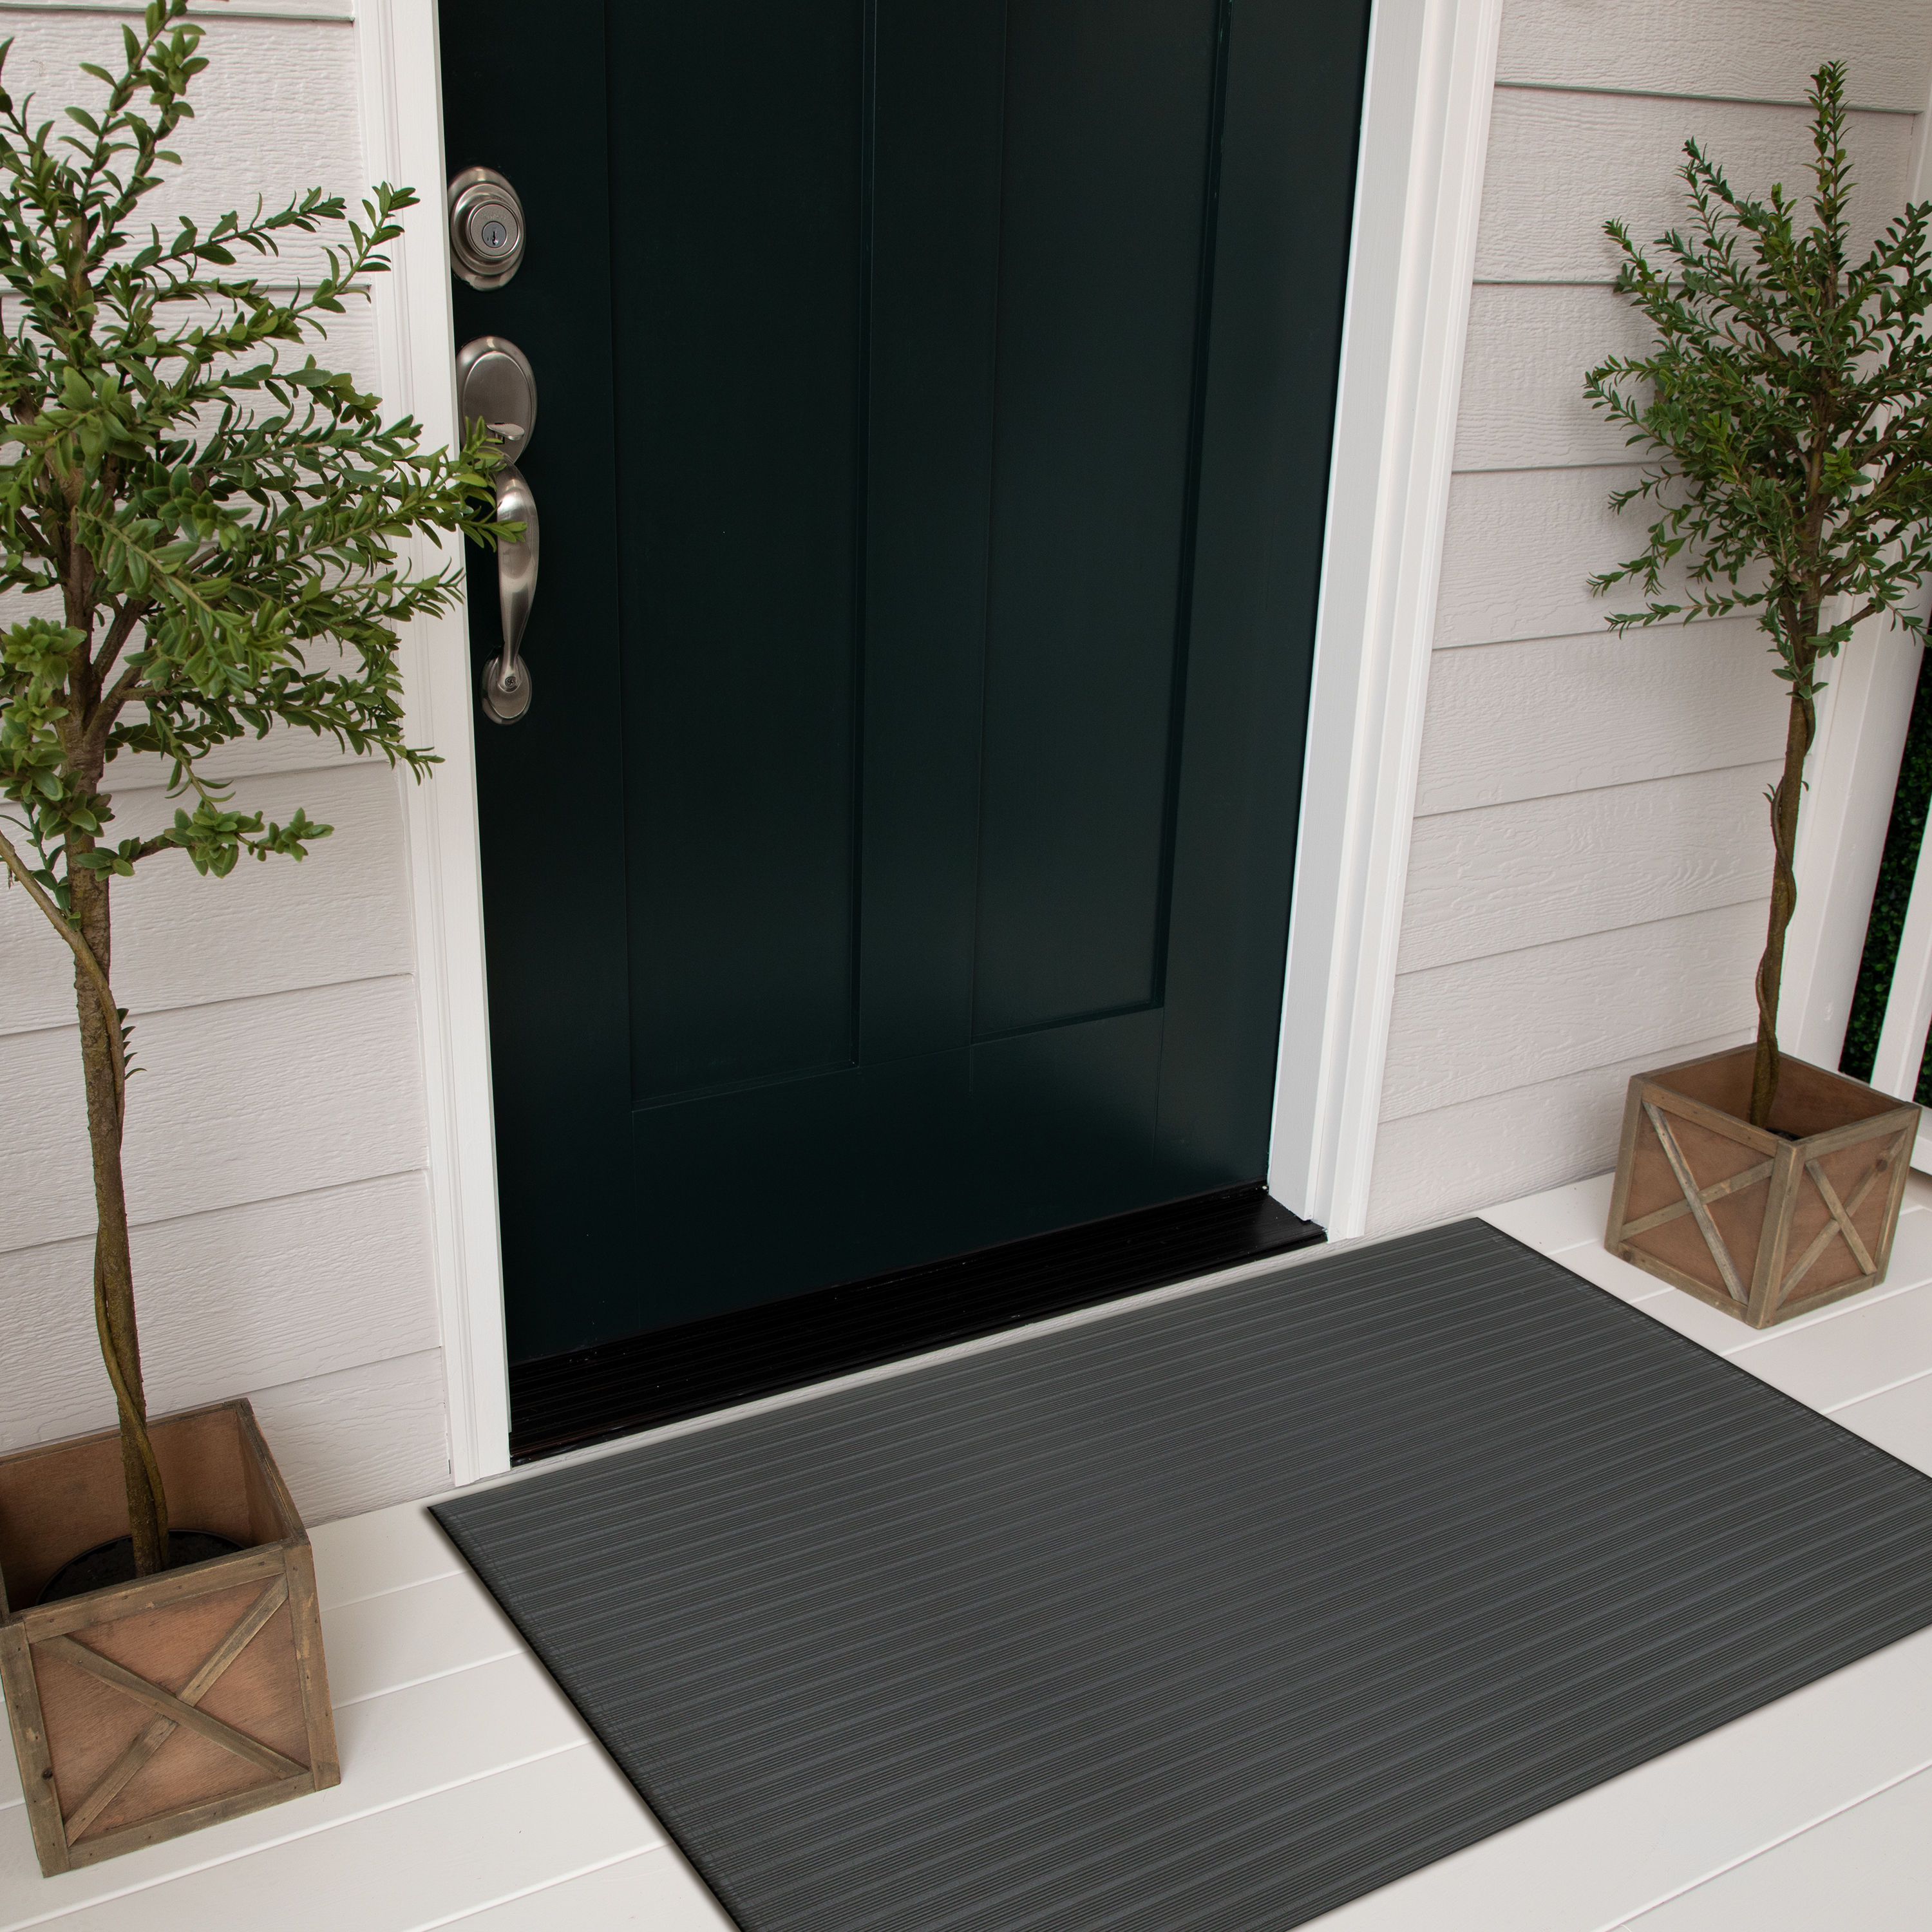 Mohawk Home Interlocking Black Rectangular Indoor or Outdoor Door